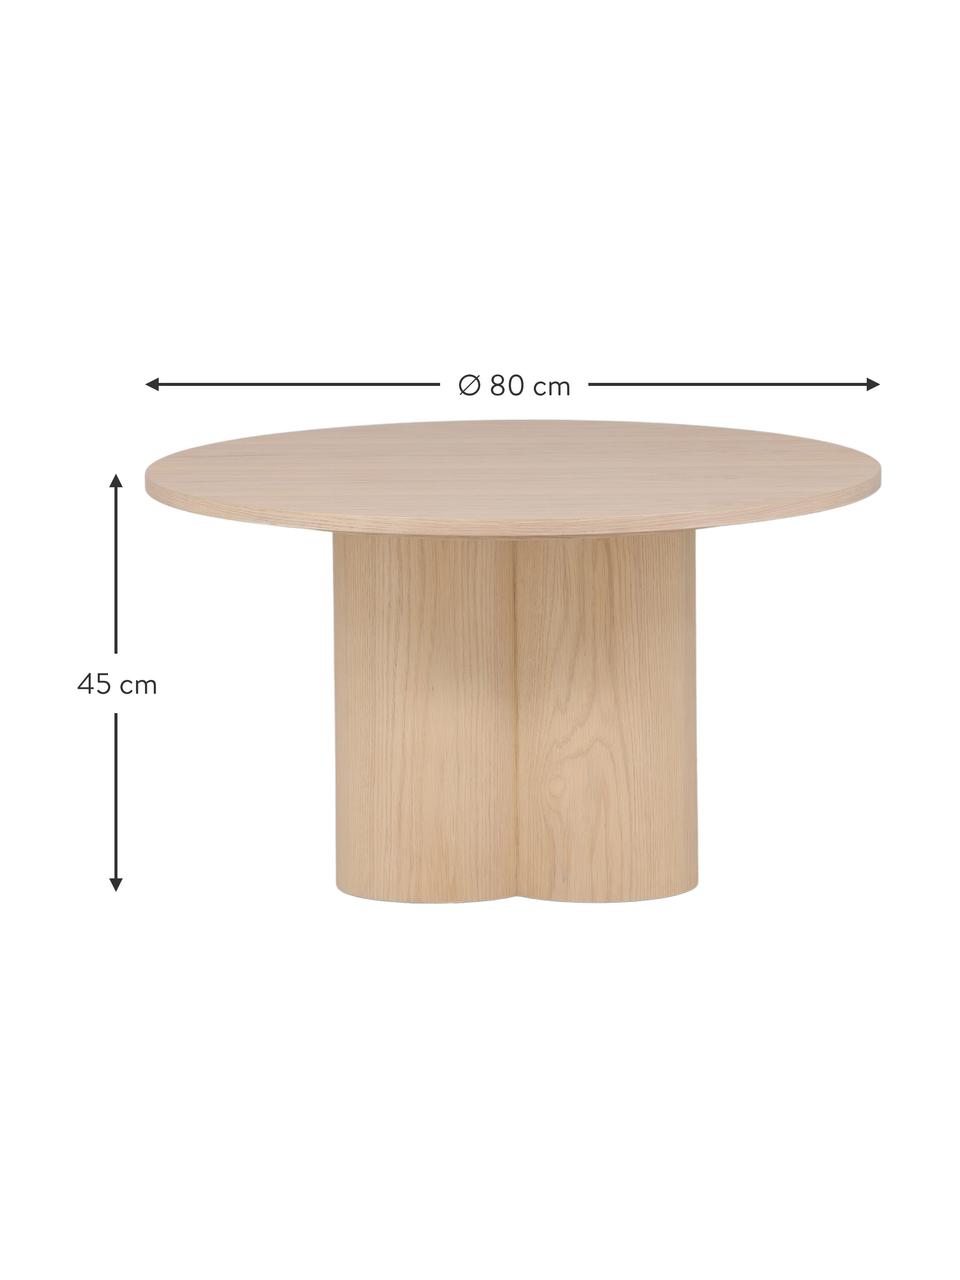 Table basse ronde en bois Olivia, MDF (panneau en fibres de bois à densité moyenne), Bois, clair laqué, Ø 80 cm